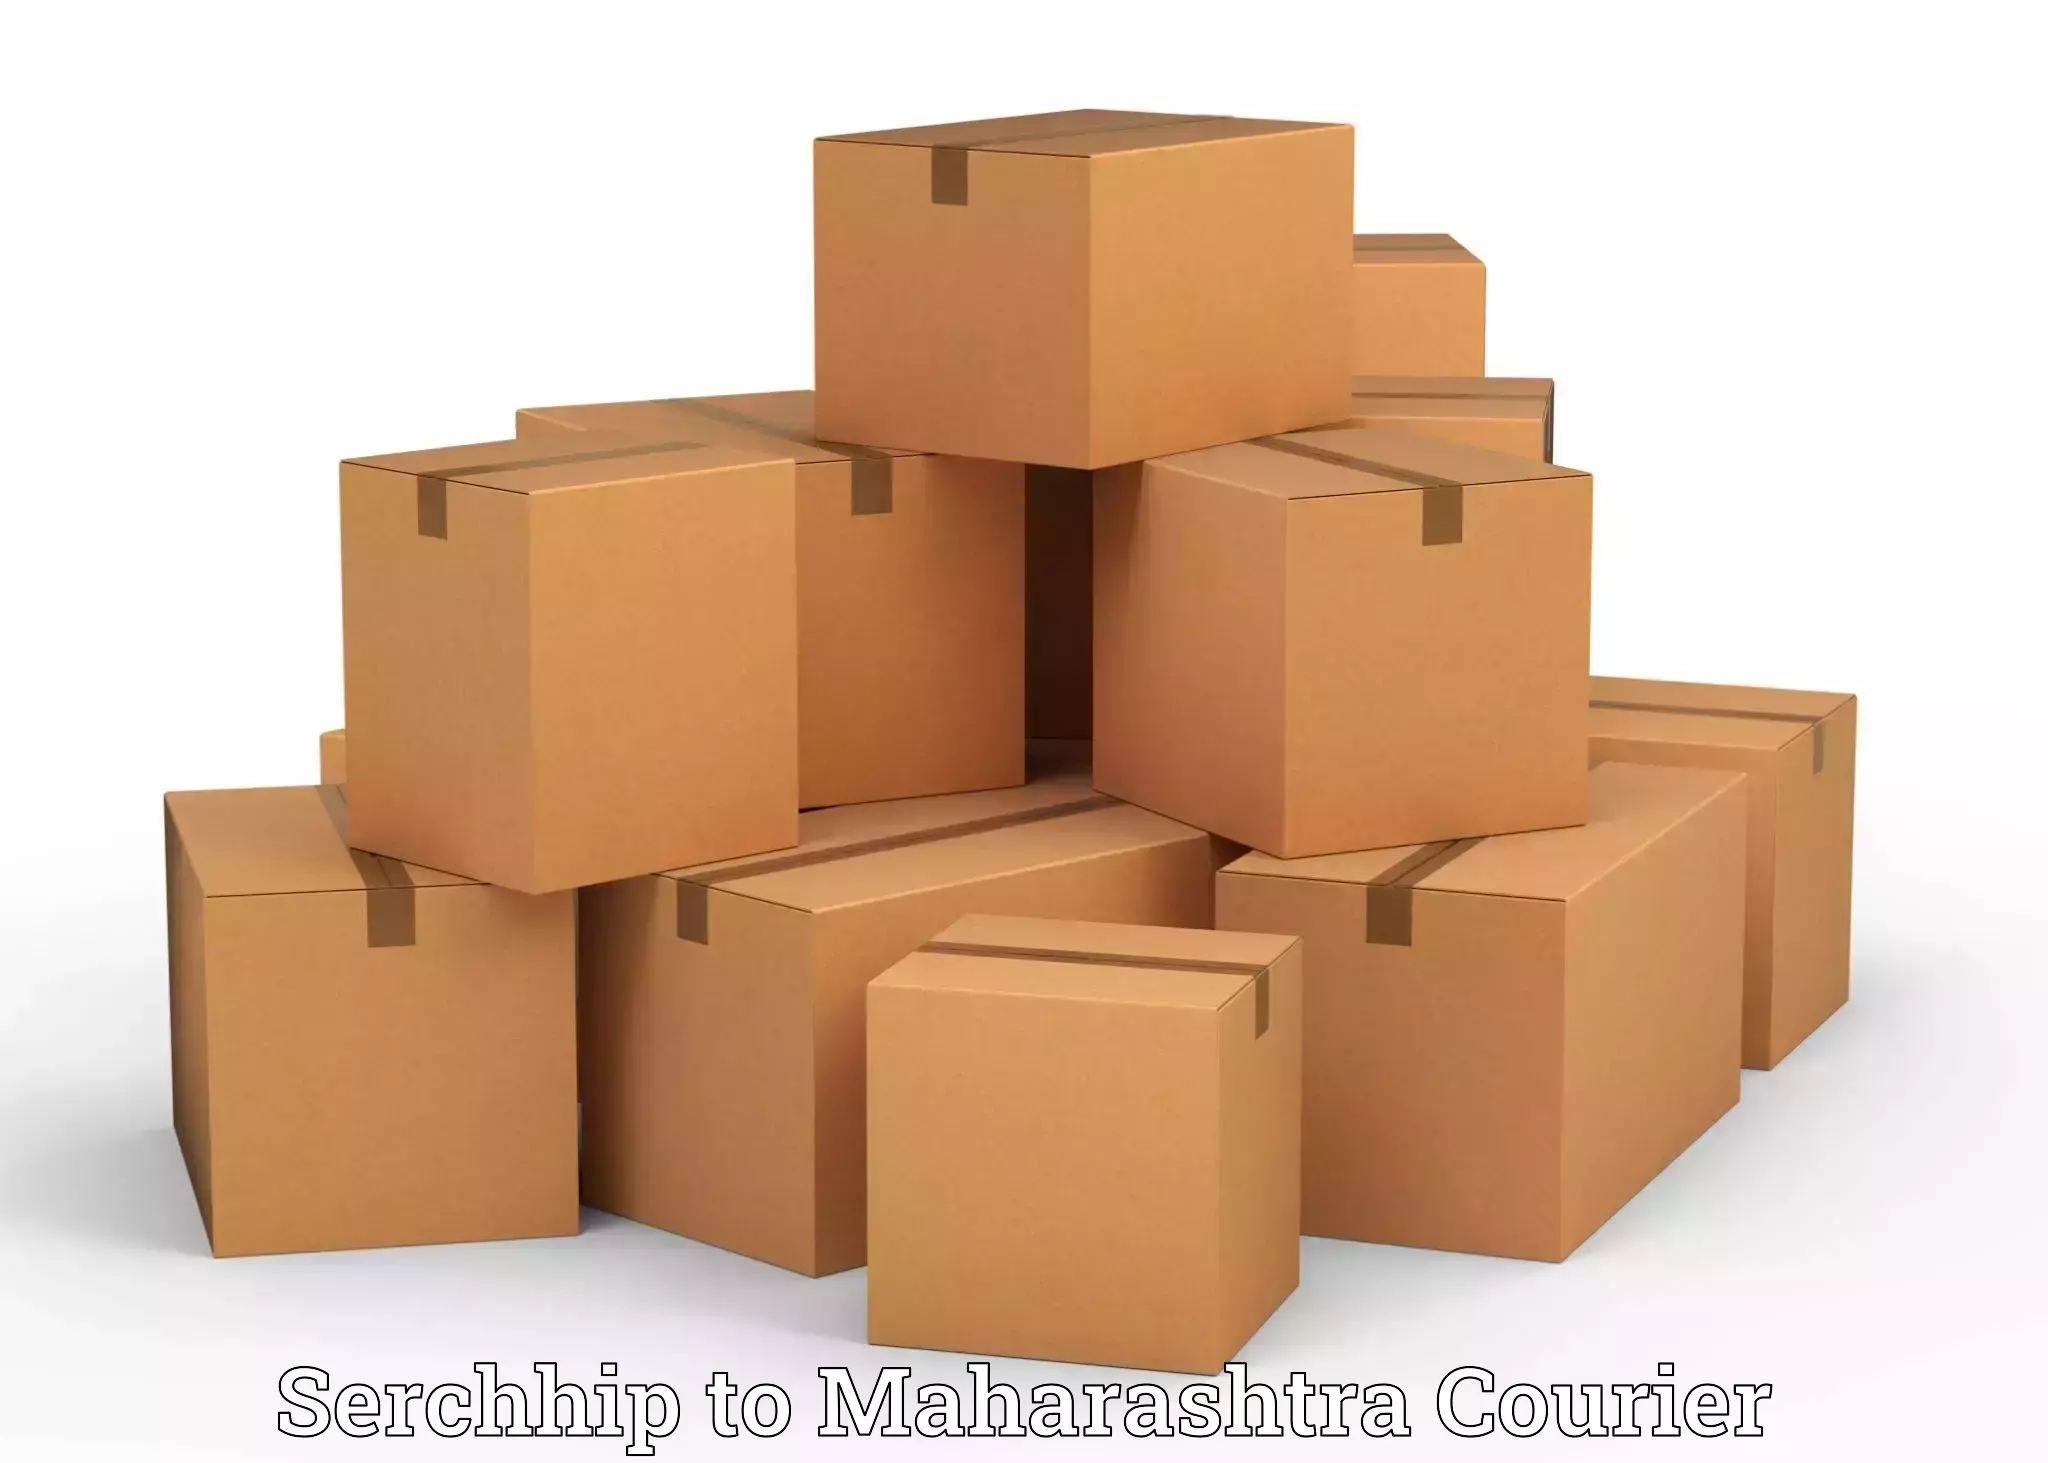 Furniture delivery service Serchhip to Karanja